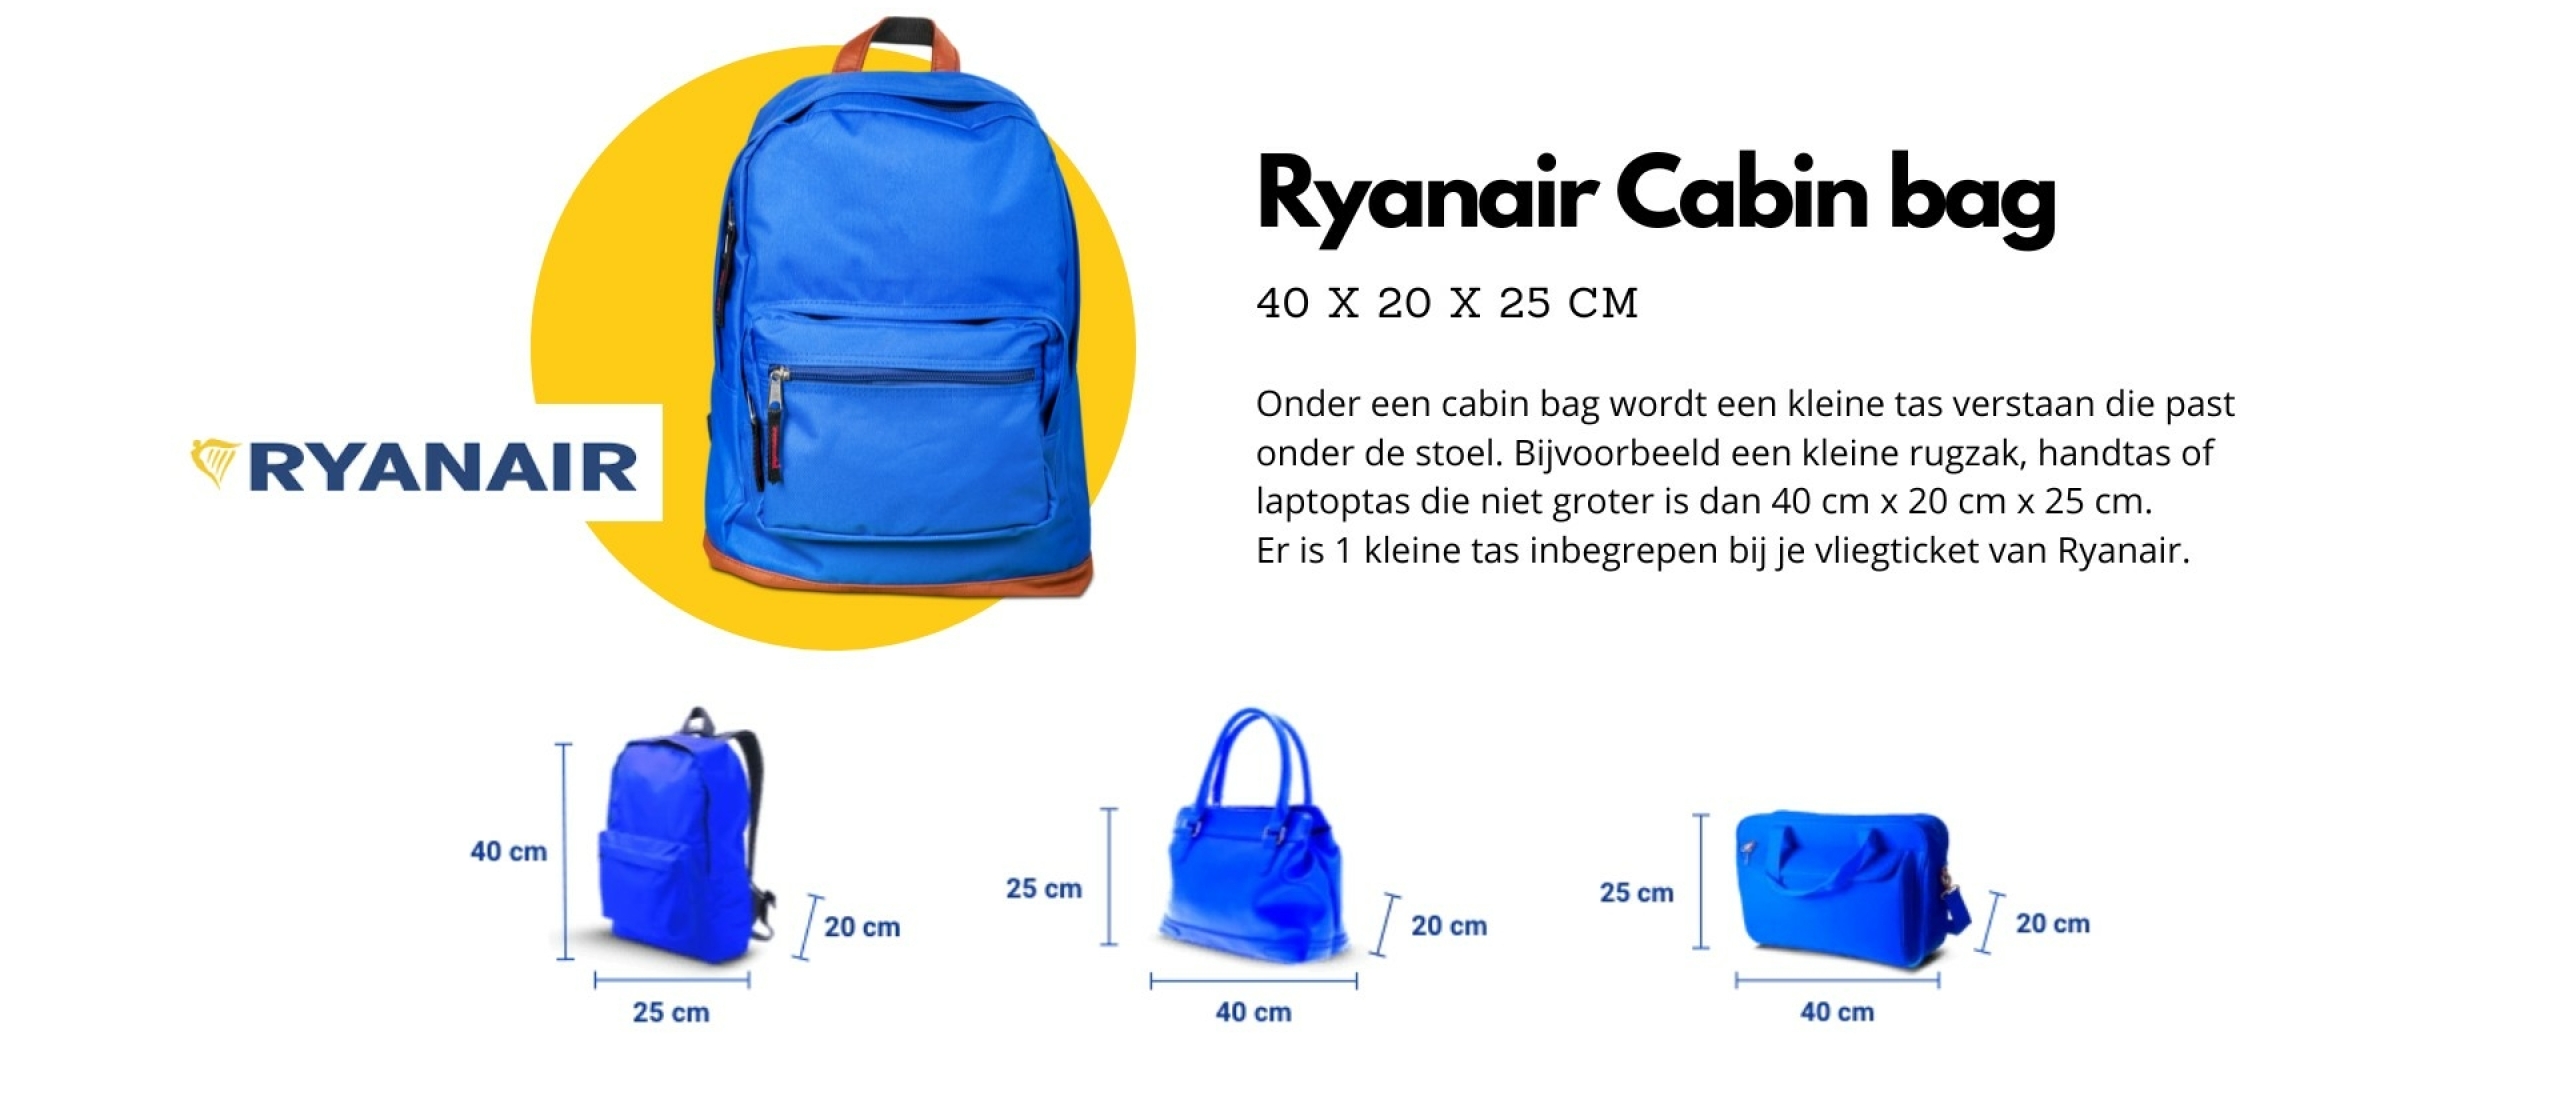 Archeologie Ventileren Mededogen De perfecte Ryanair cabin bag voor reizen op handbagage 40x20x25